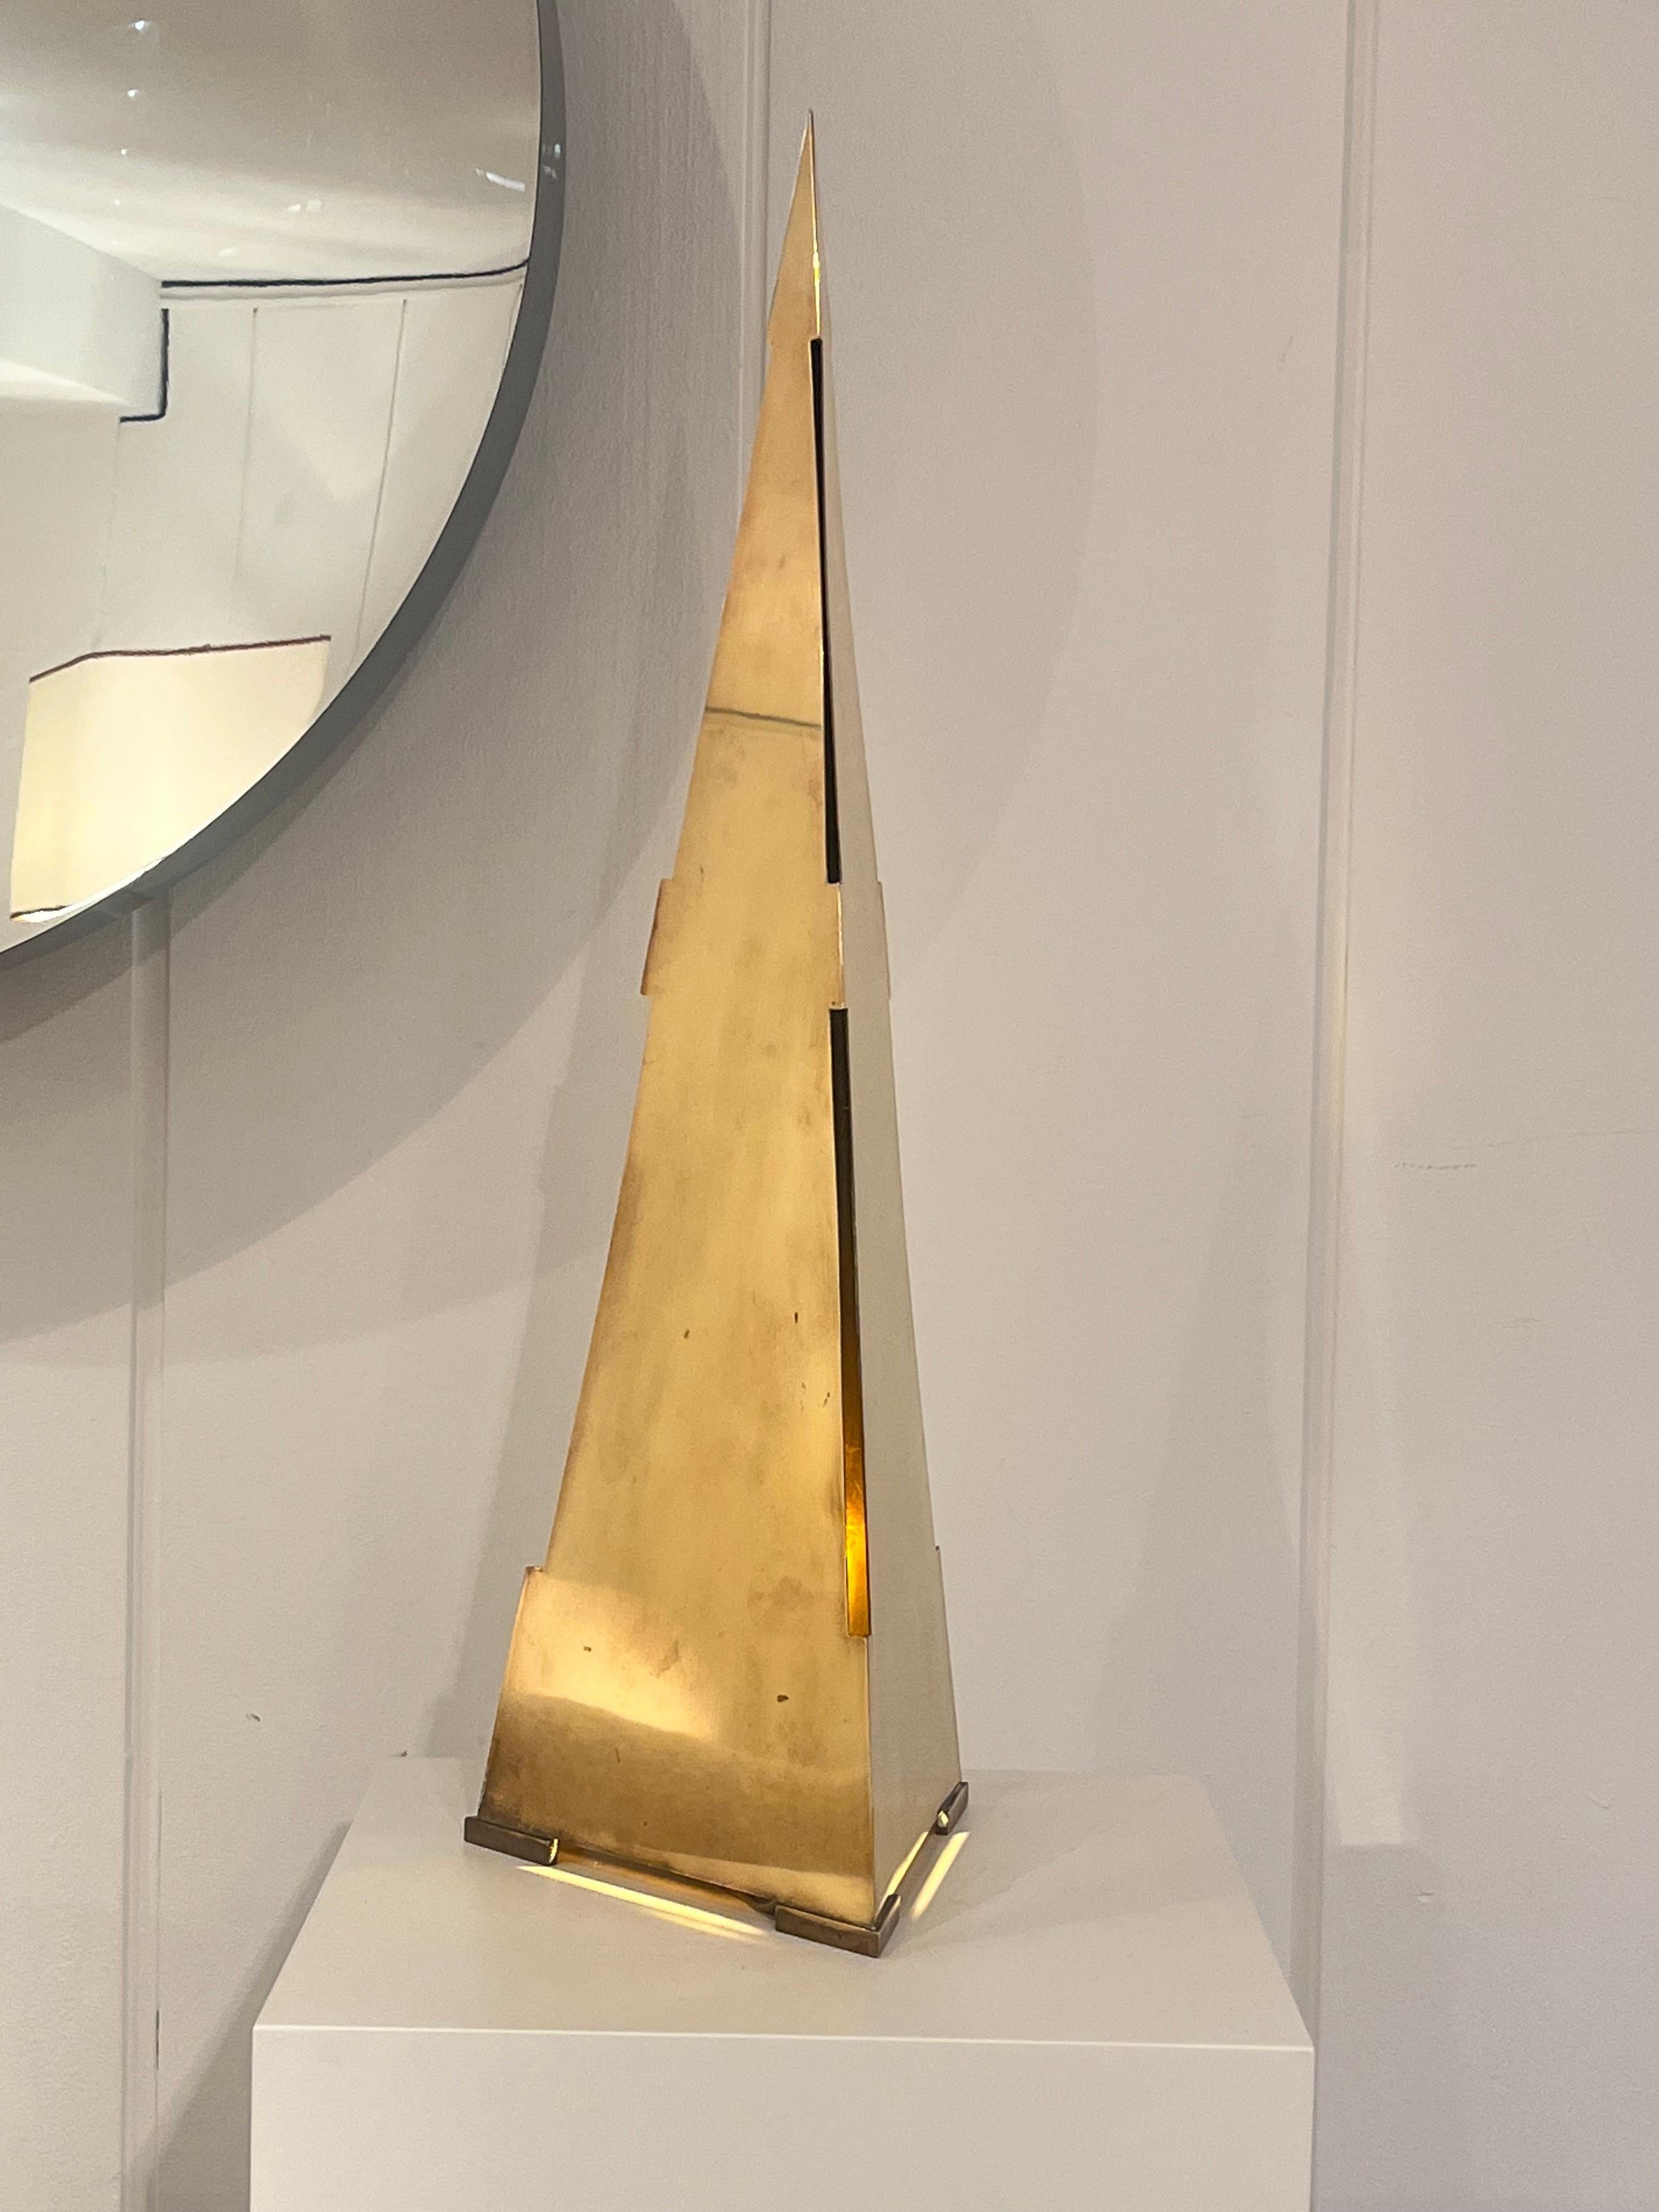 Gabriella Crespi
Obelisk-Lampe aus Messing
Signiert von der Künstlerin
Italv 1970
67 cm x 20 cm × 20 cm